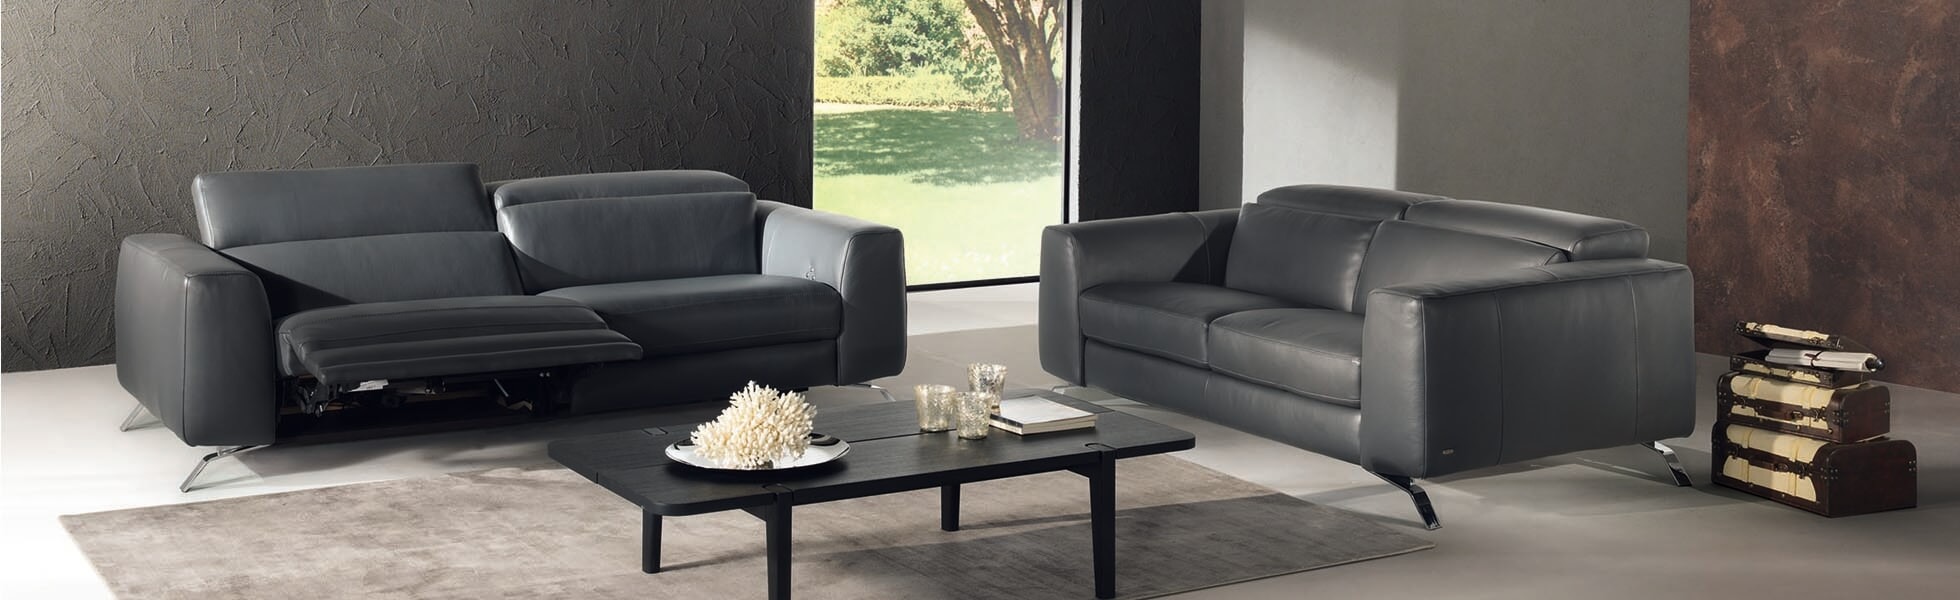 Los sofás de futuro, para un salón moderno y confortable 5